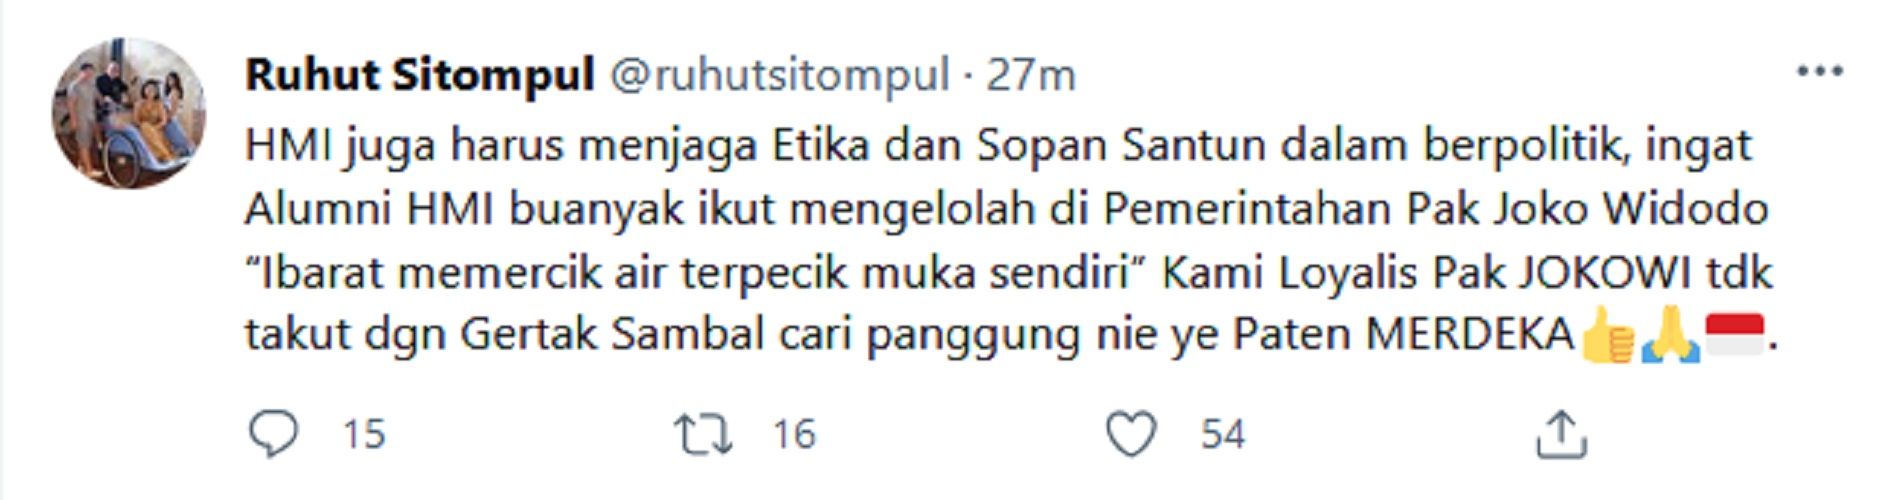 HMI Desak Jokowi Turun Tahta, Ruhut Sitompul: Alumni HMI Banyak di Pemerintahan, Kami Tak Takut